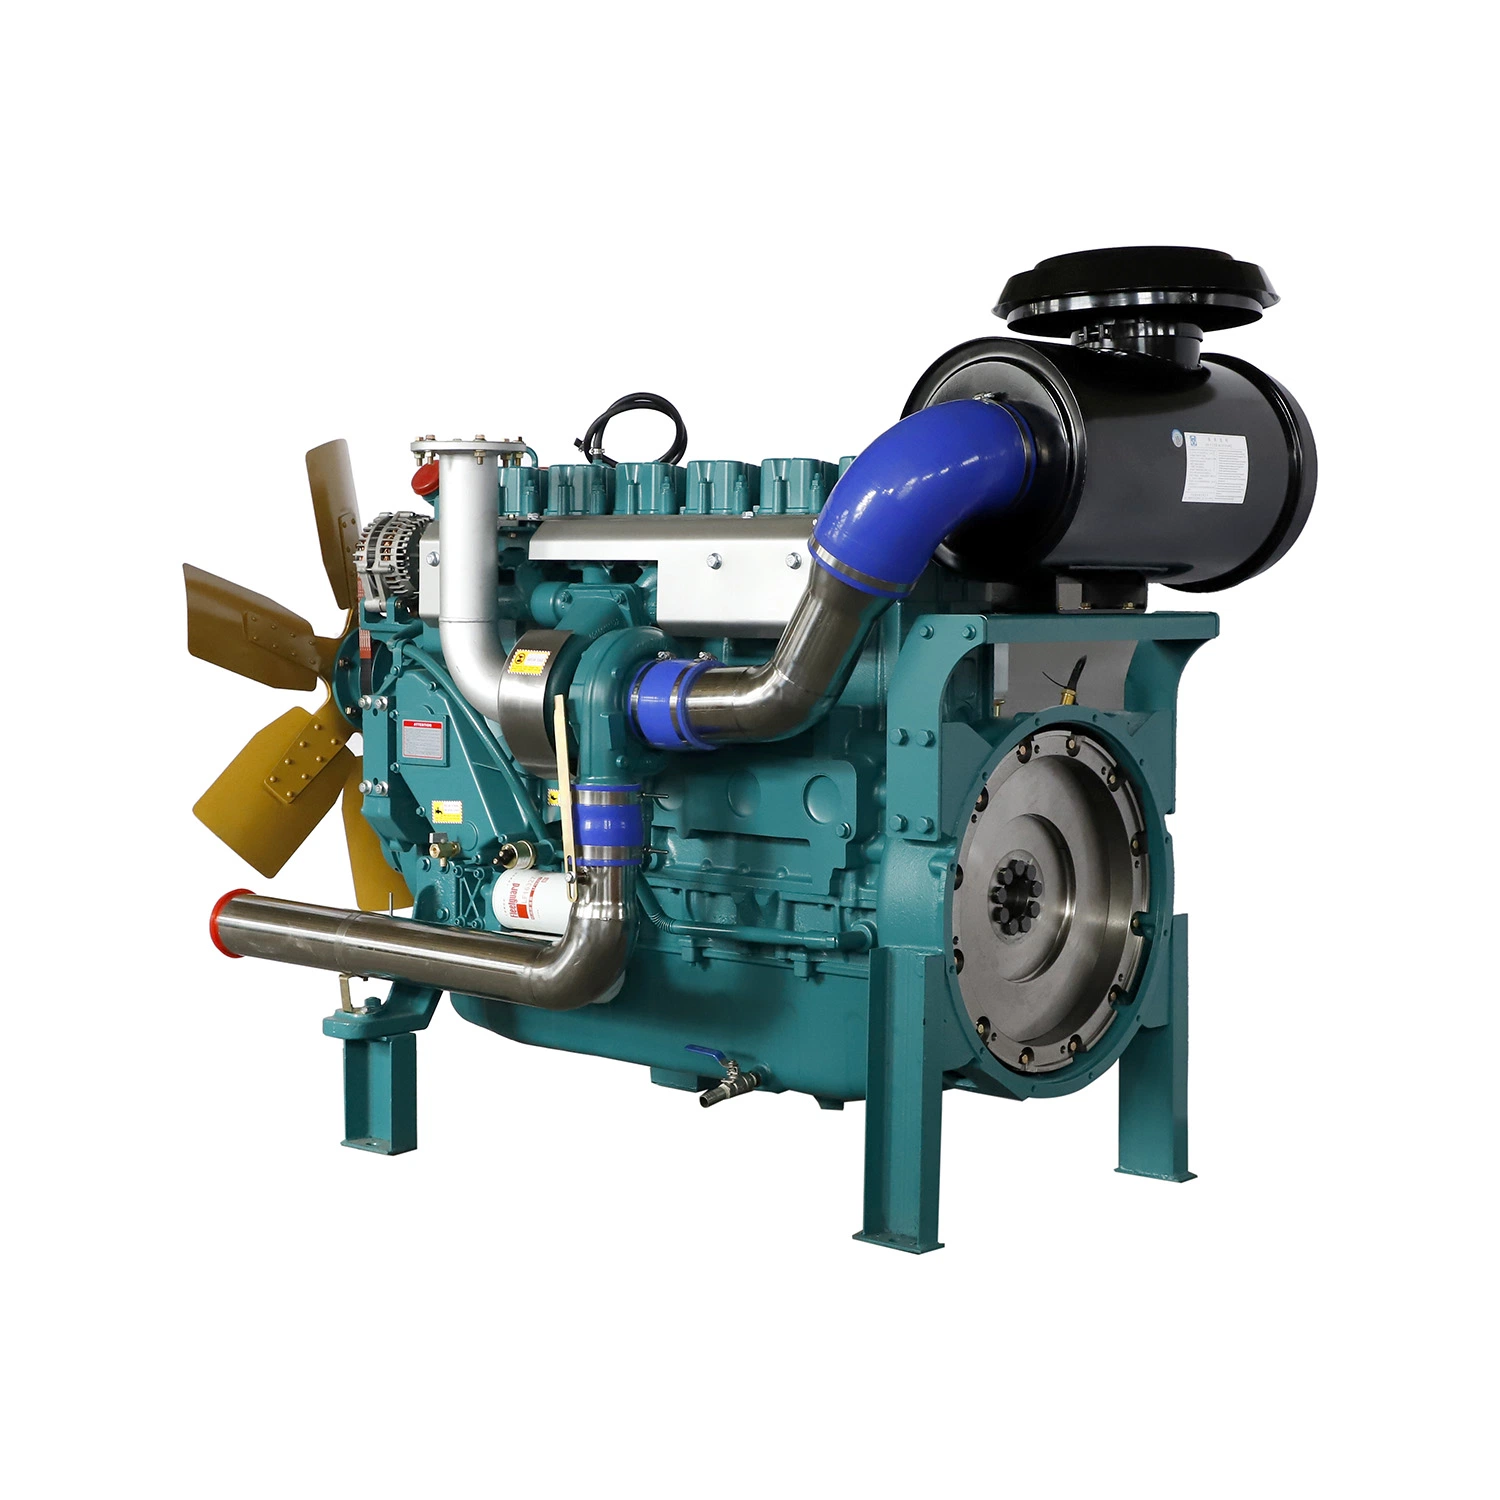 محرك ديزل مخصص مبرد بالمياه بالجملة مصنع / ست أسطوانات محرك ديزل يستخدم لمجموعات مولدات الطاقة بسعر تنافسي